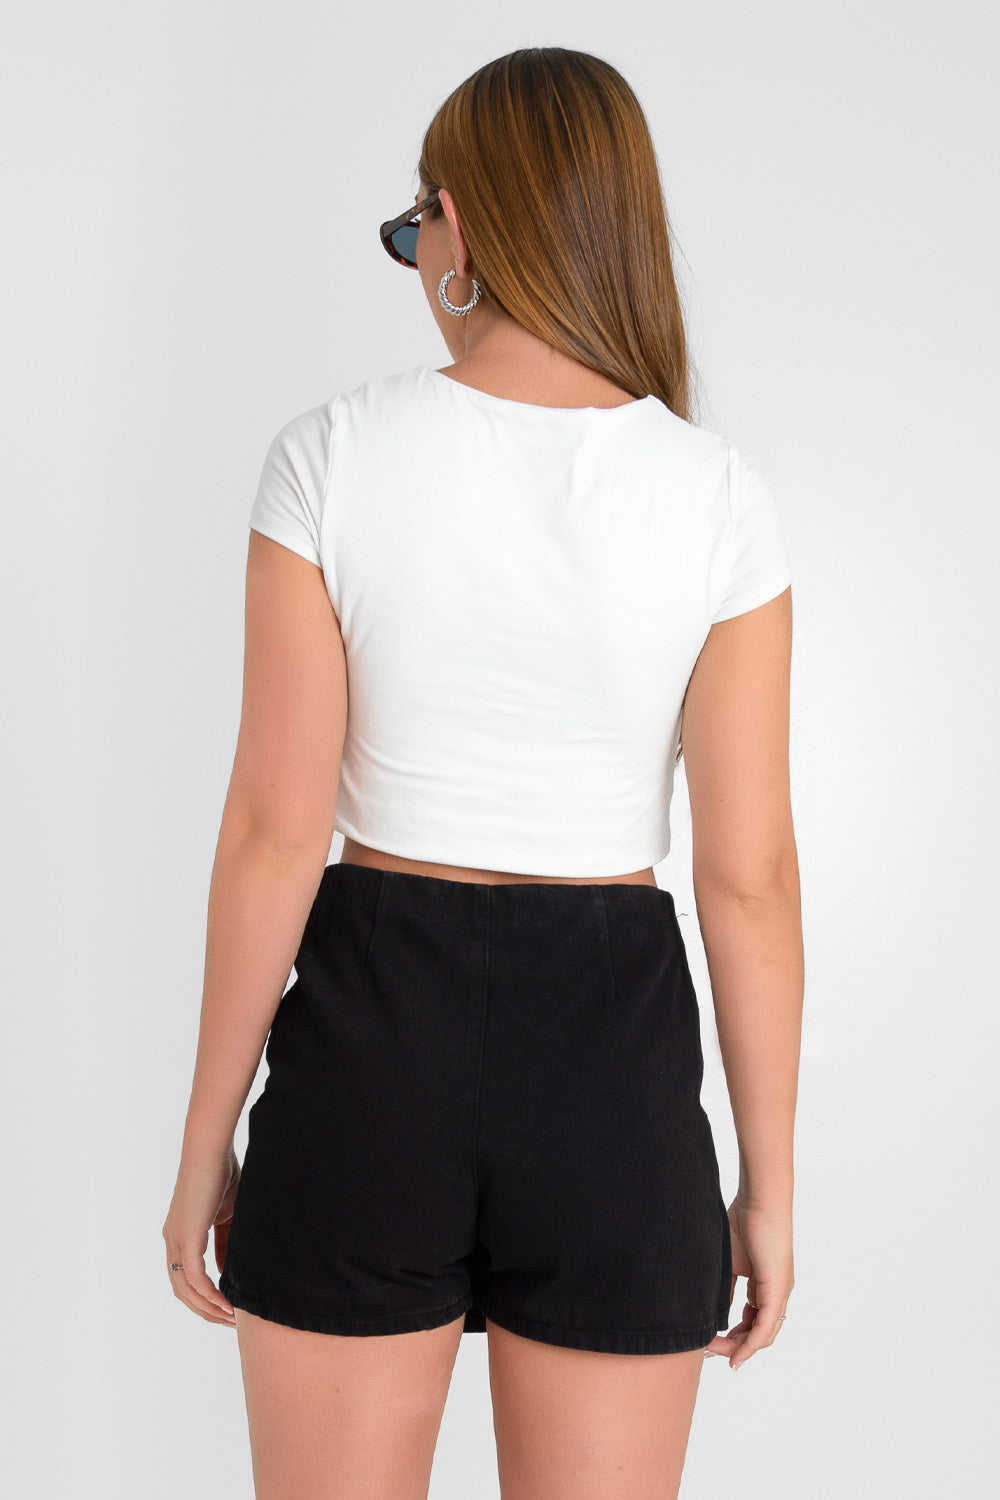 Falda short corto de fit ajustado, cintura alta, cruce frontal con plisados decorativos y cierre lateral con cremallera oculta.